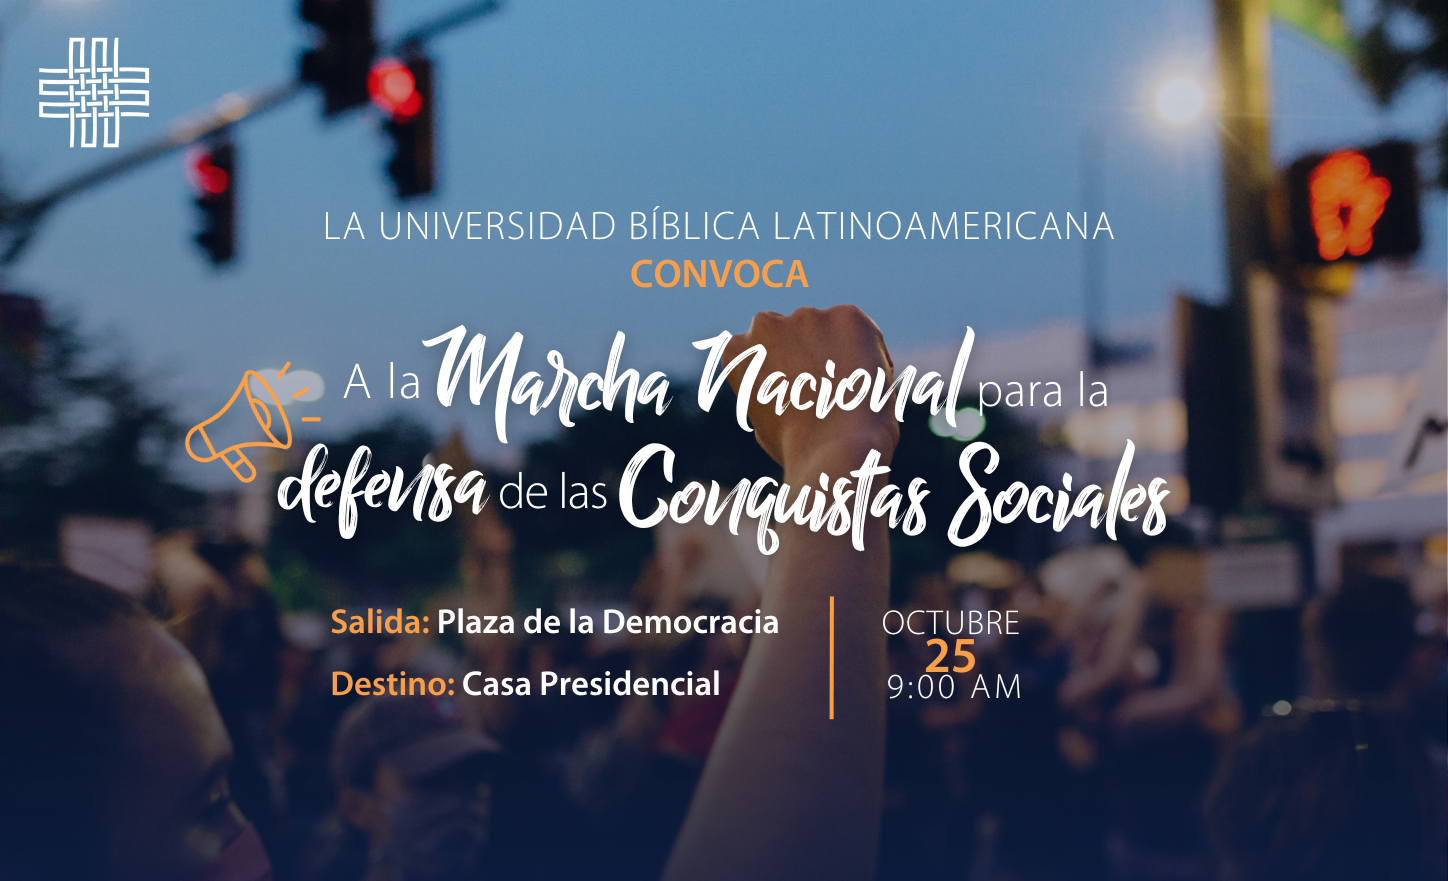 Marcha Nacional para la Defensa de las Conquistas Sociales, Costa Rica